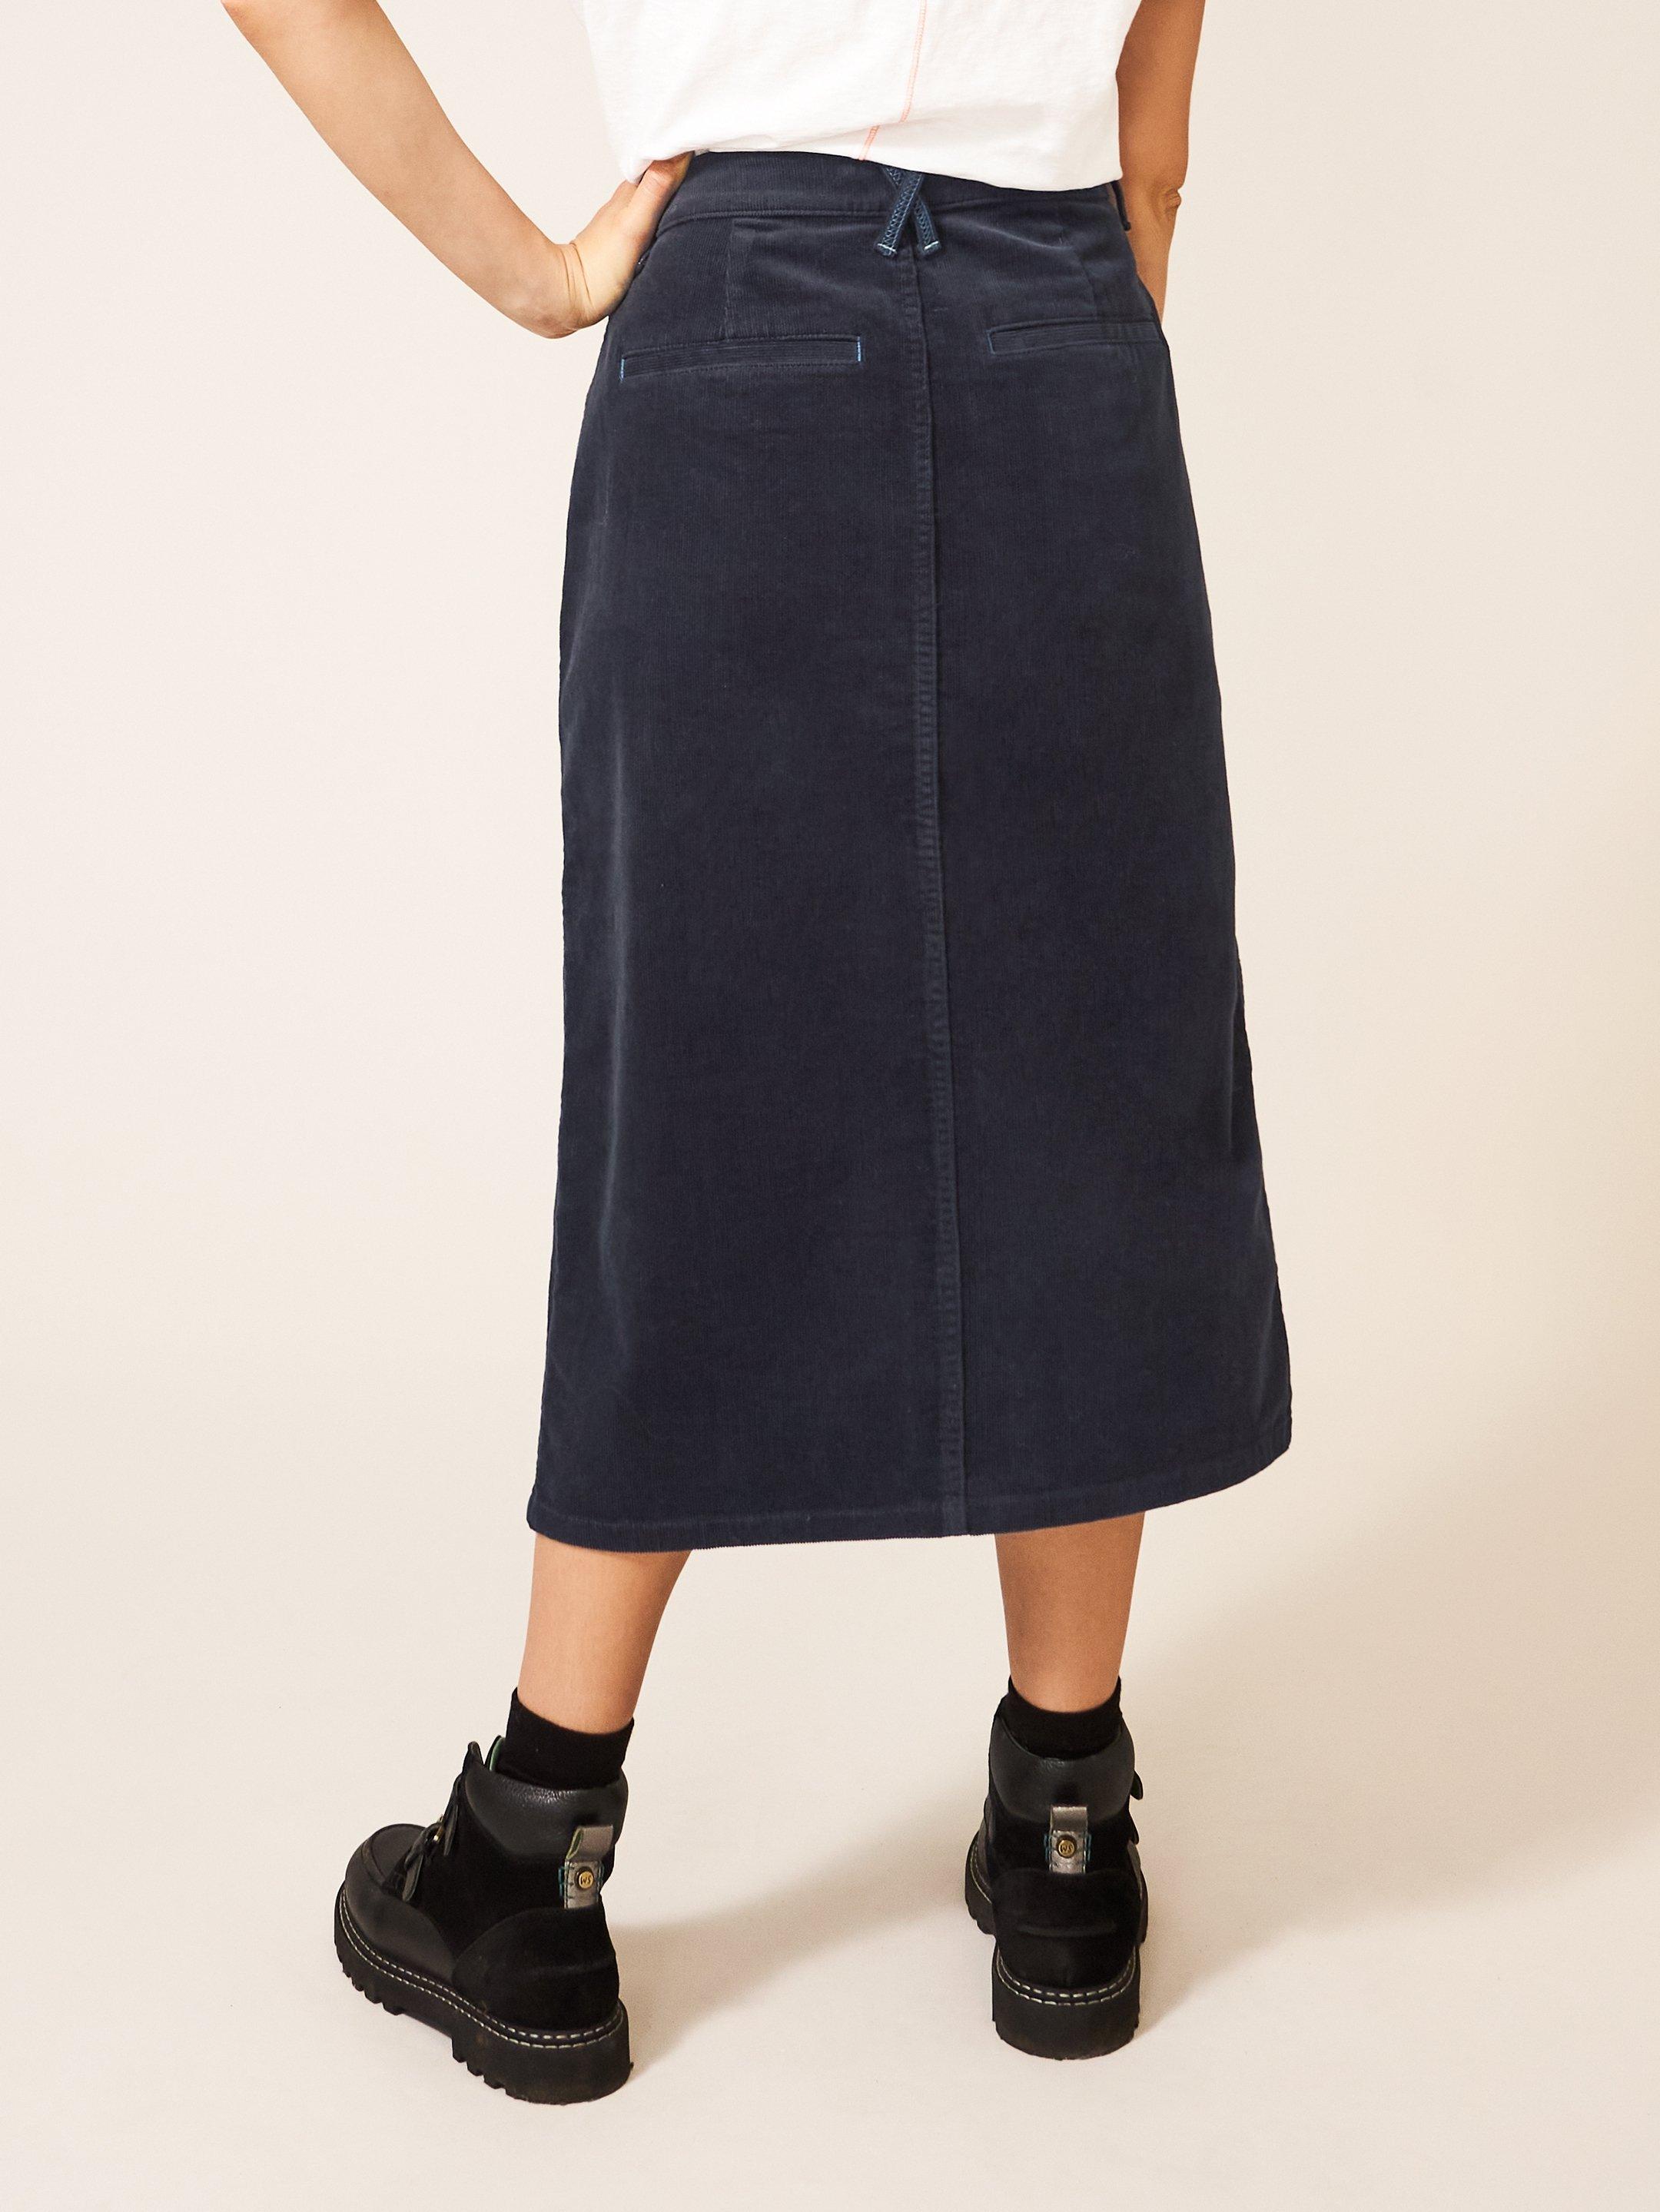 Poppy Organic Cord Midi Skirt in DK GREY - MODEL BACK